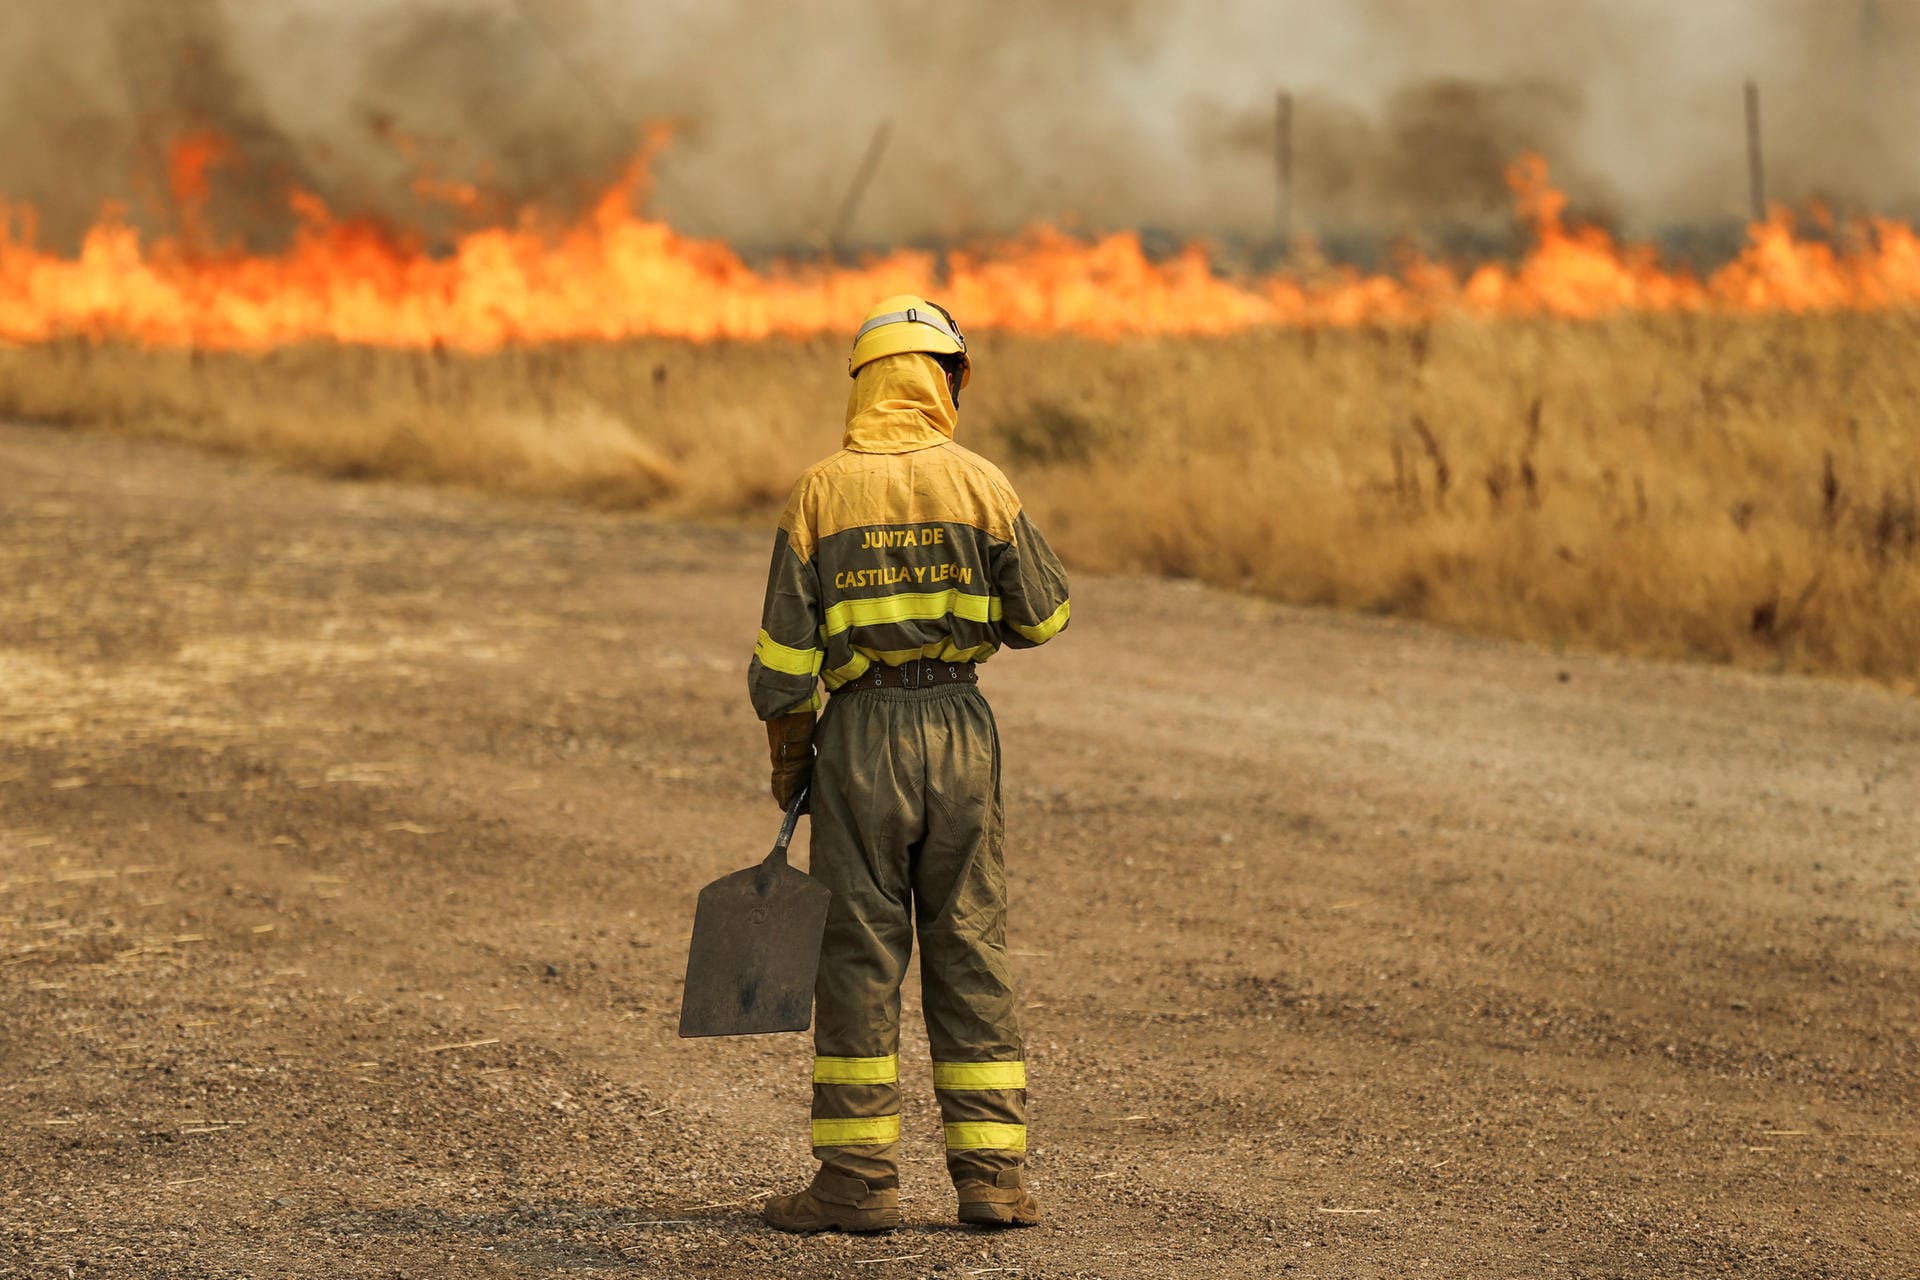 Zamora, Spanien: Feuerwehrleute kämpfen gegen ein Feuer in einem Weizenfeld. Die Nordwesten Spaniens erlebt bereits die zweite Hitzewelle in diesem Jahr.